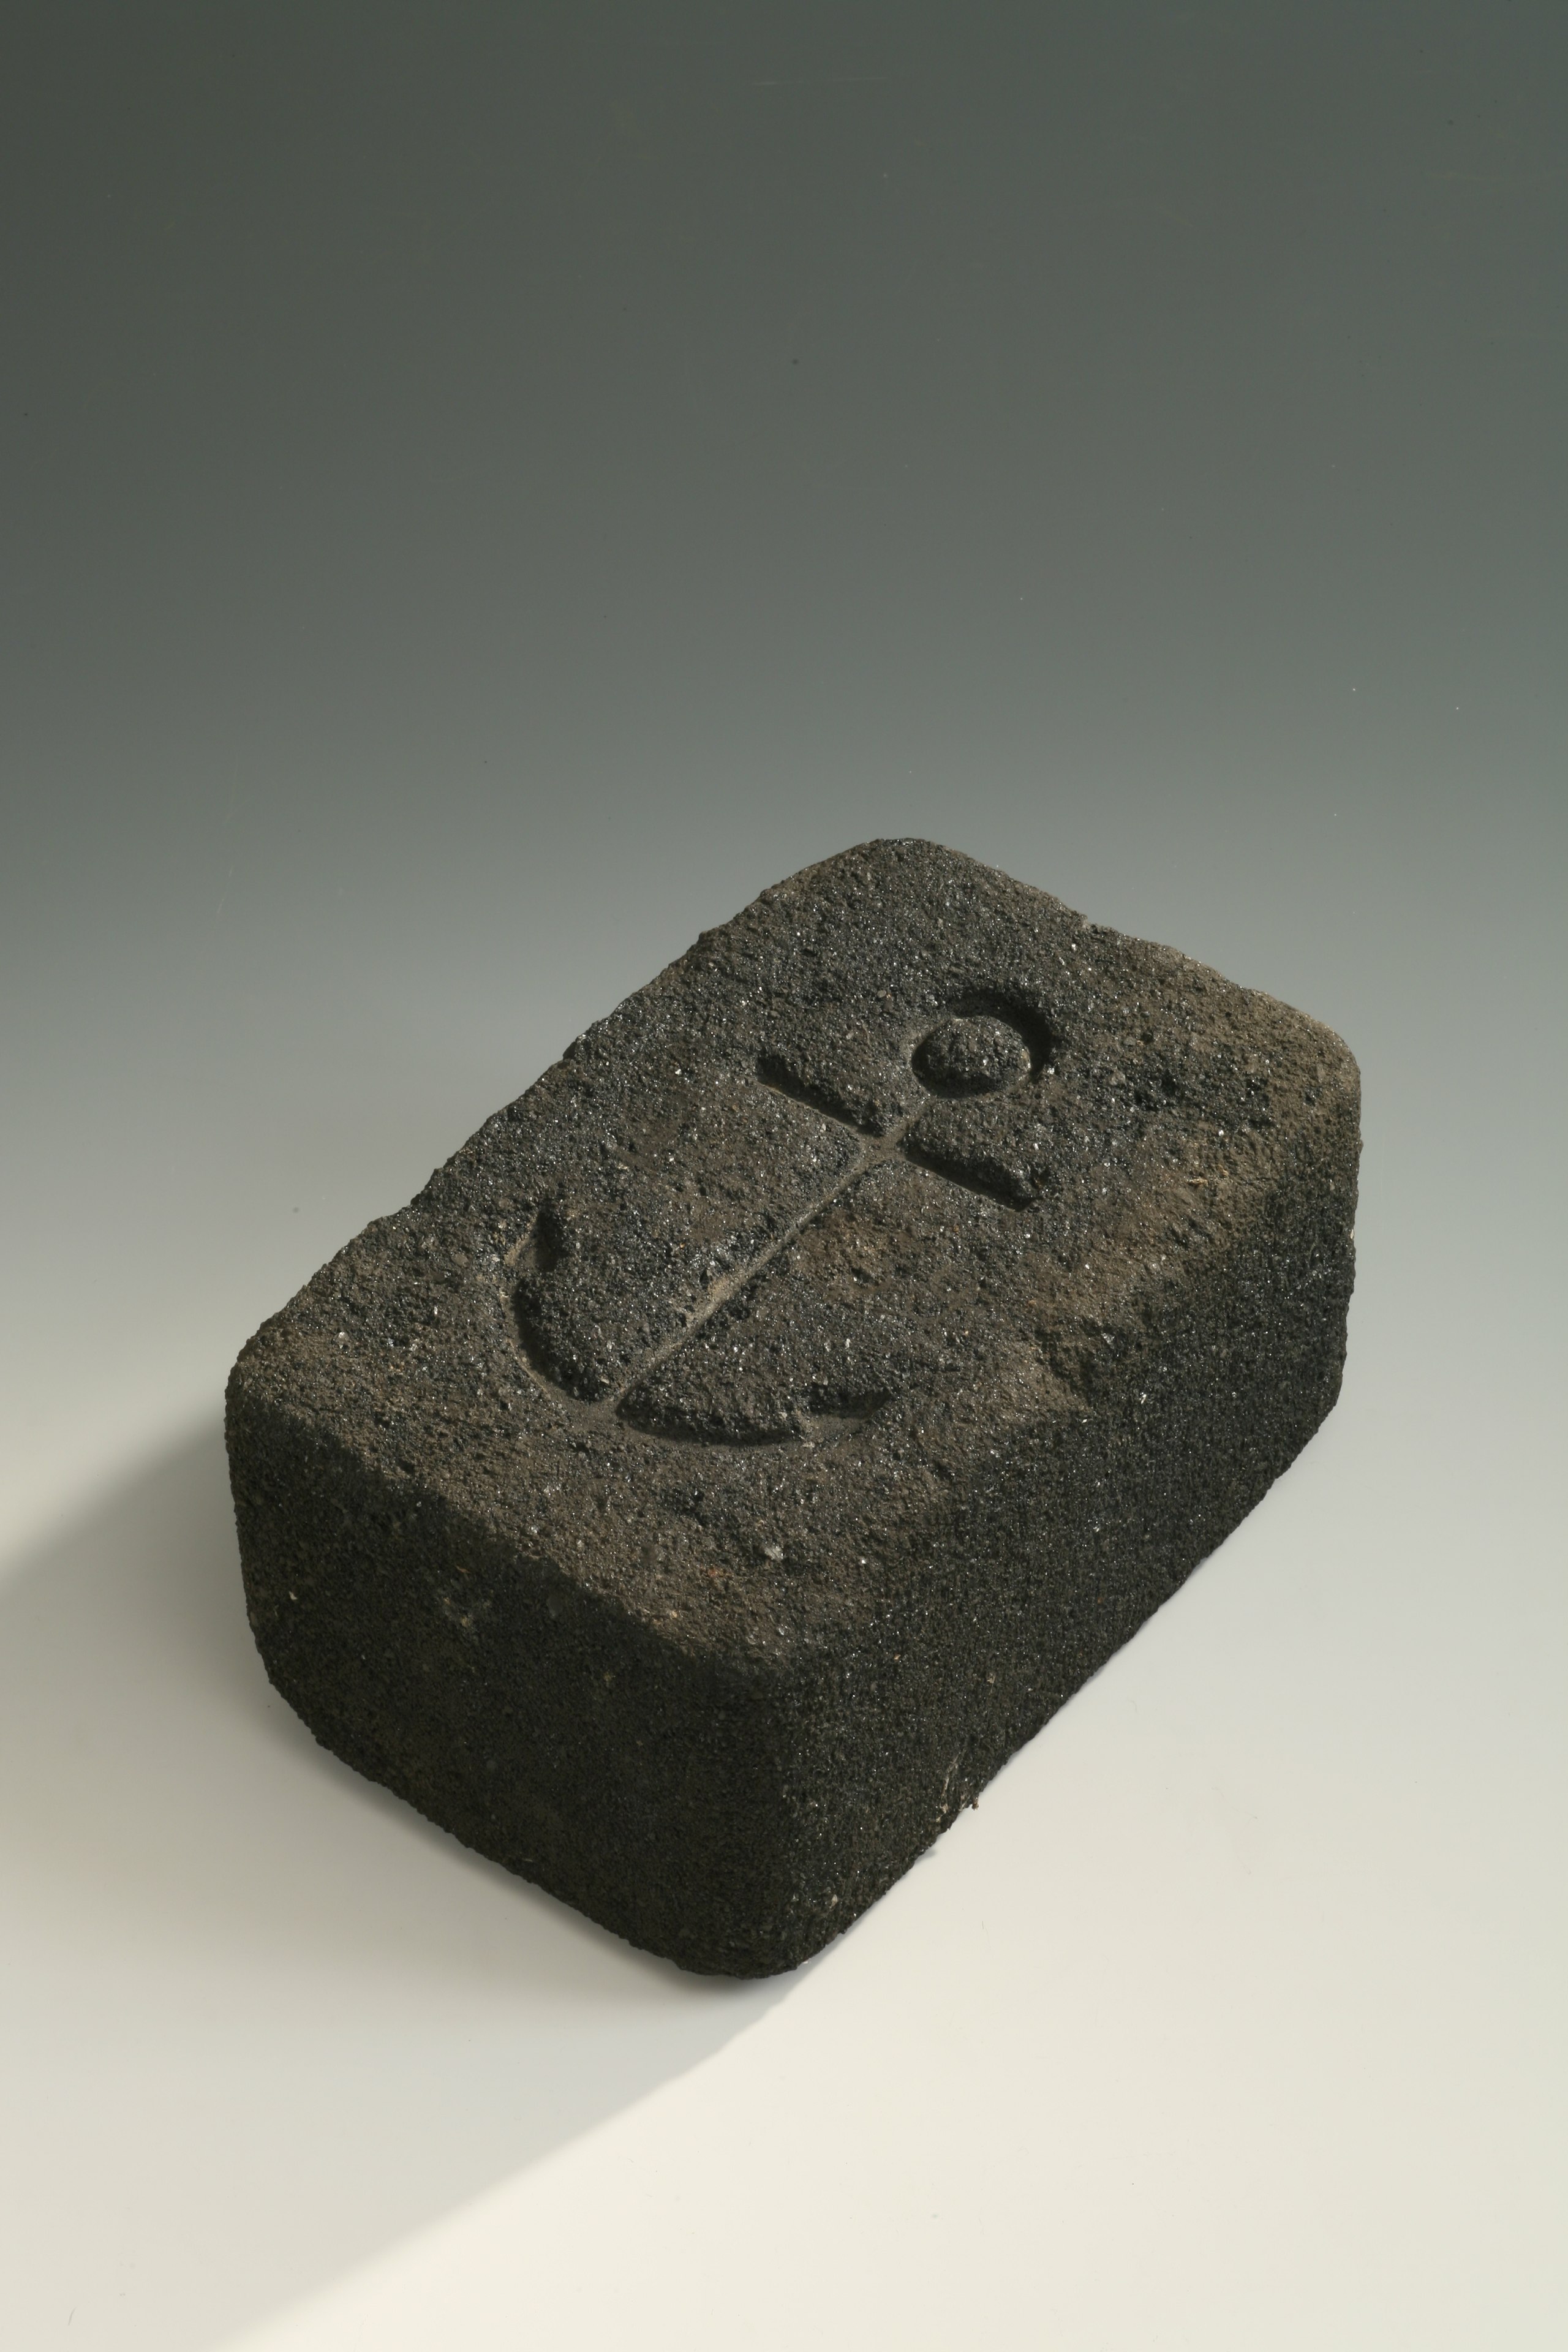 File:11-briquette-de-charbon.jpg - Wikimedia Commons